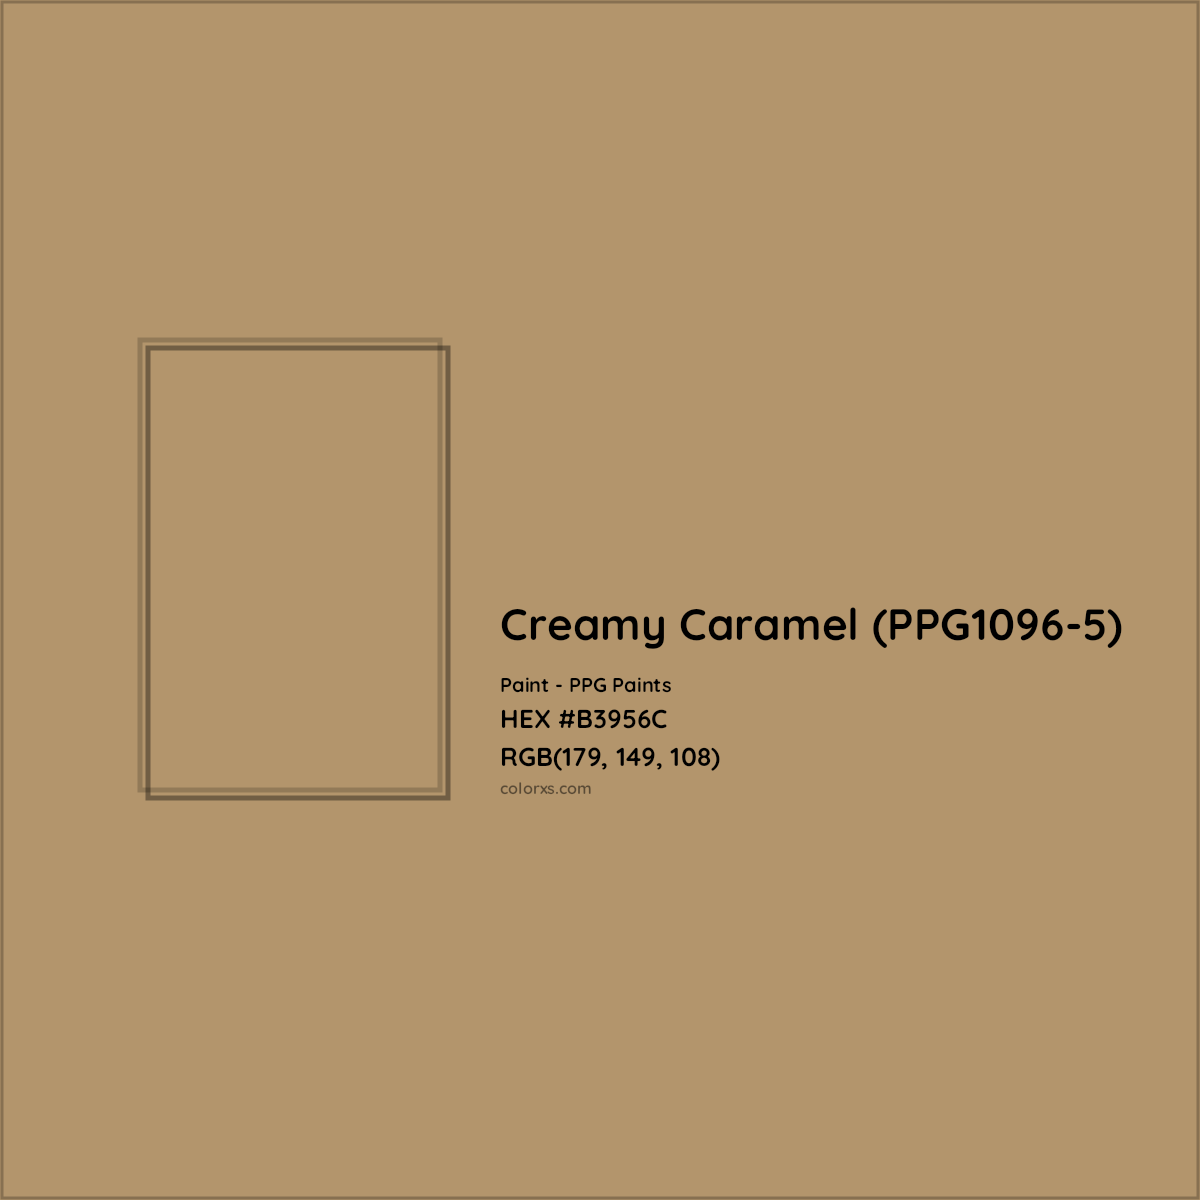 HEX #B3956C Creamy Caramel (PPG1096-5) Paint PPG Paints - Color Code